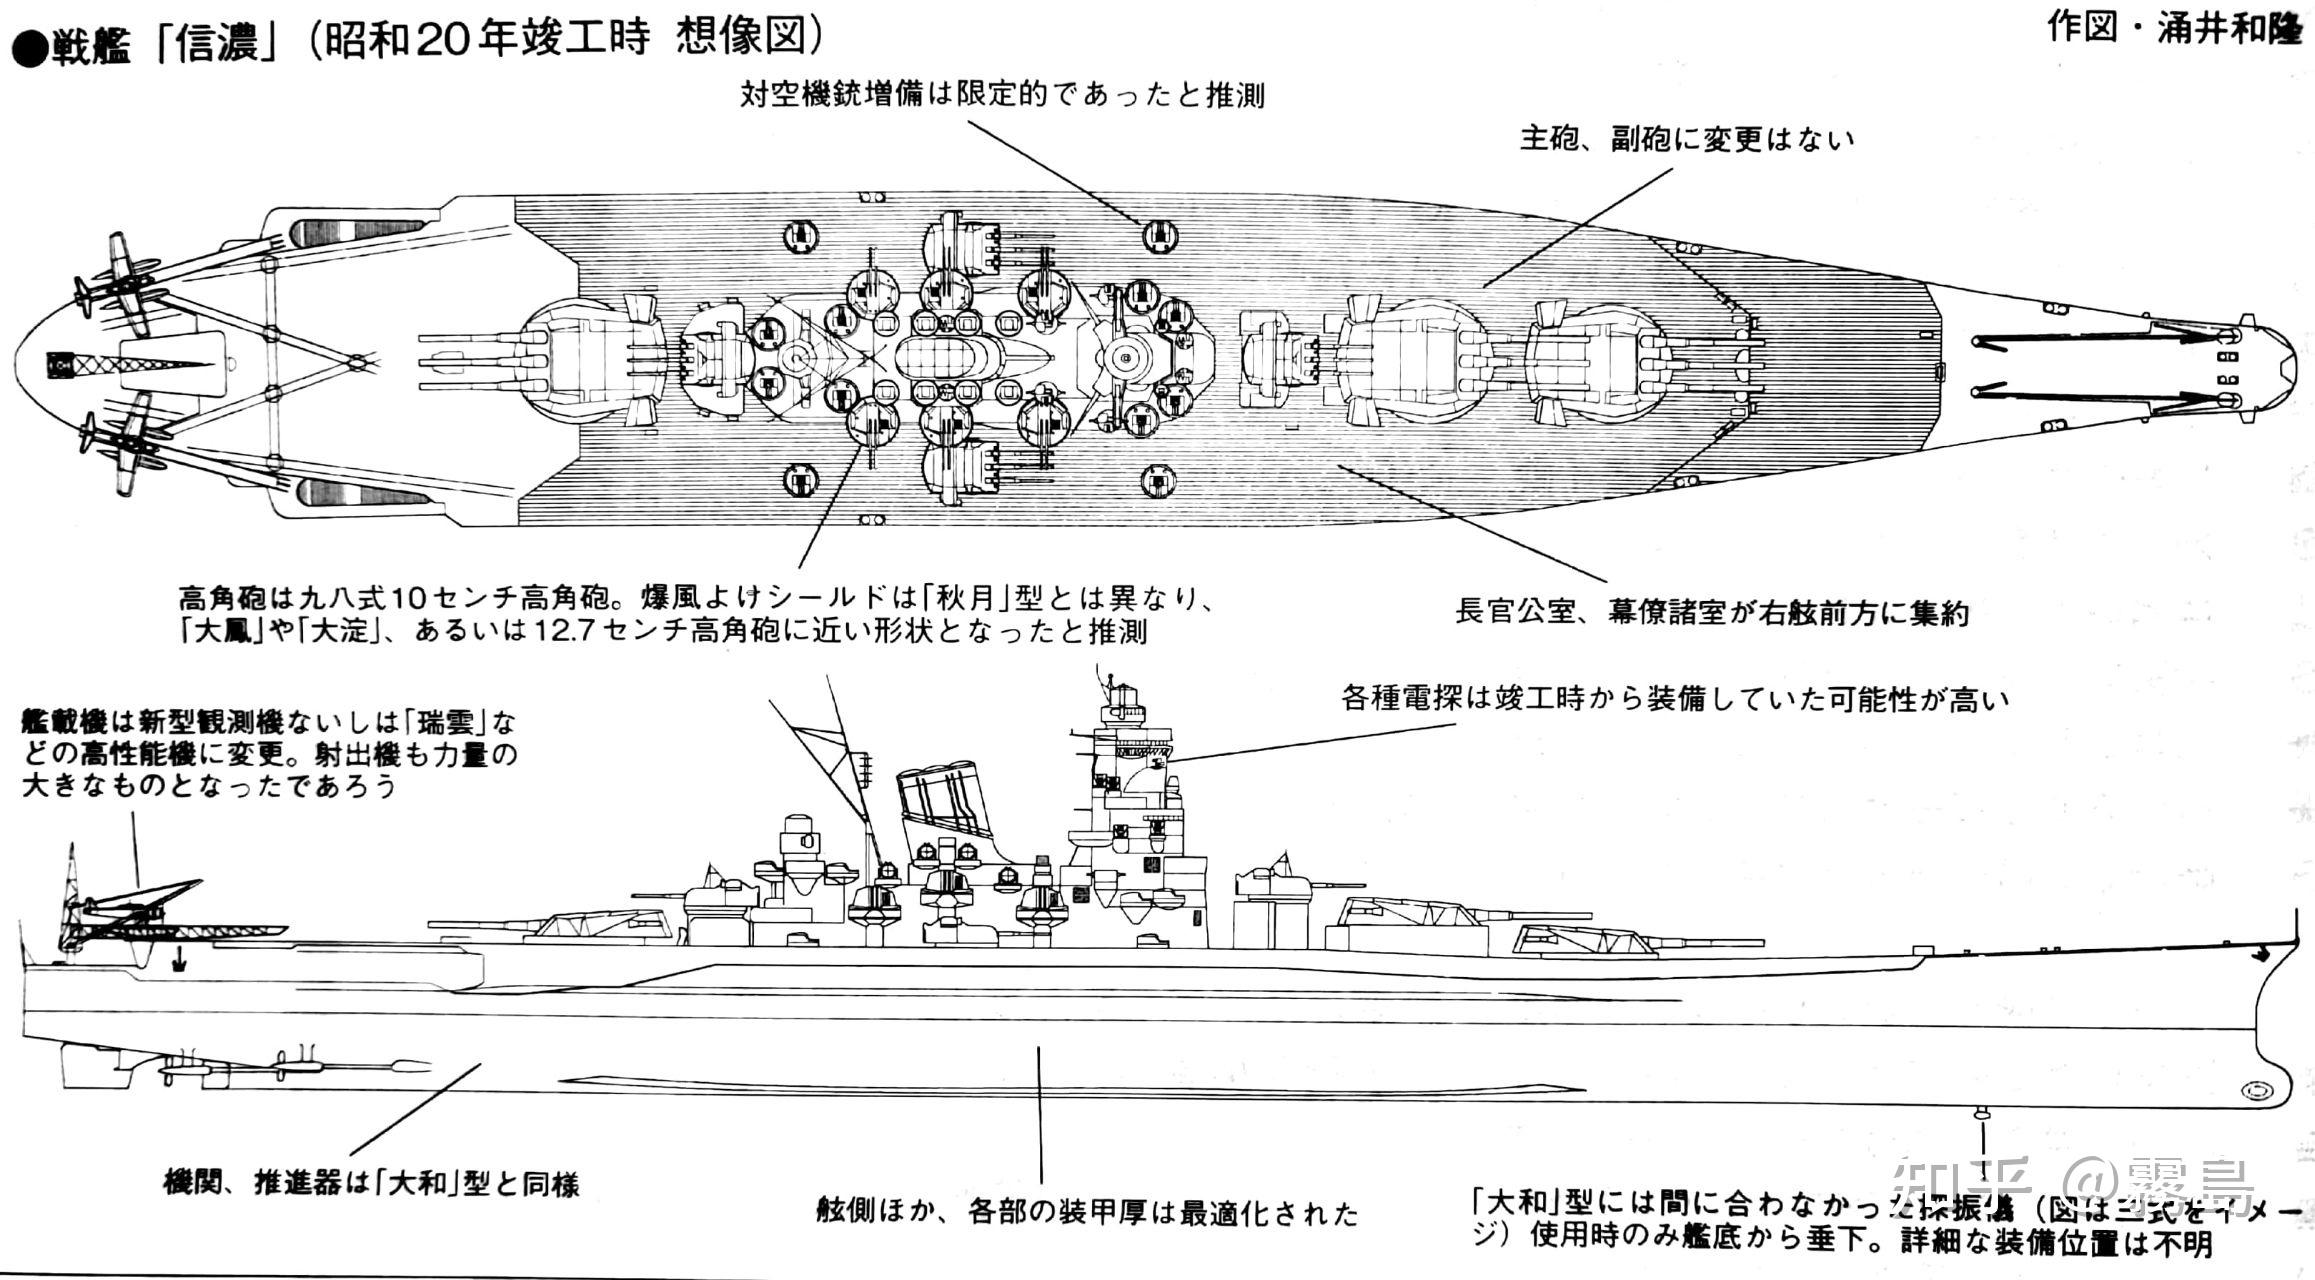 继丸三计划的大和,武藏后,丸四计划再次列入两艘大和级战列舰,以接替